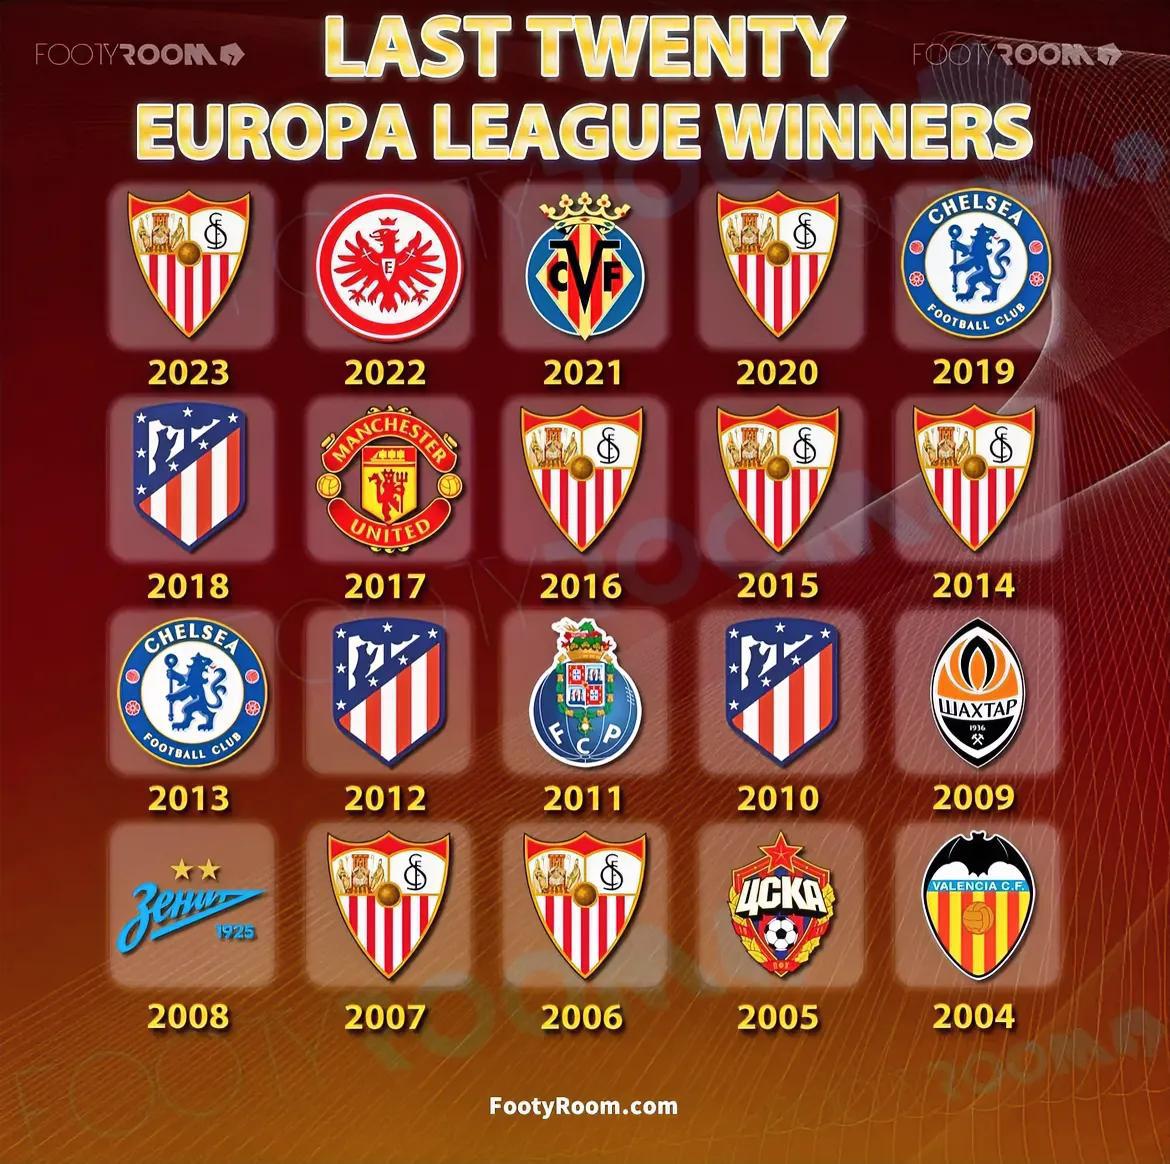 近20年欧联(联盟杯)冠军

7次 - 塞维利亚
3次 - 马德里竞技
2次 -(1)